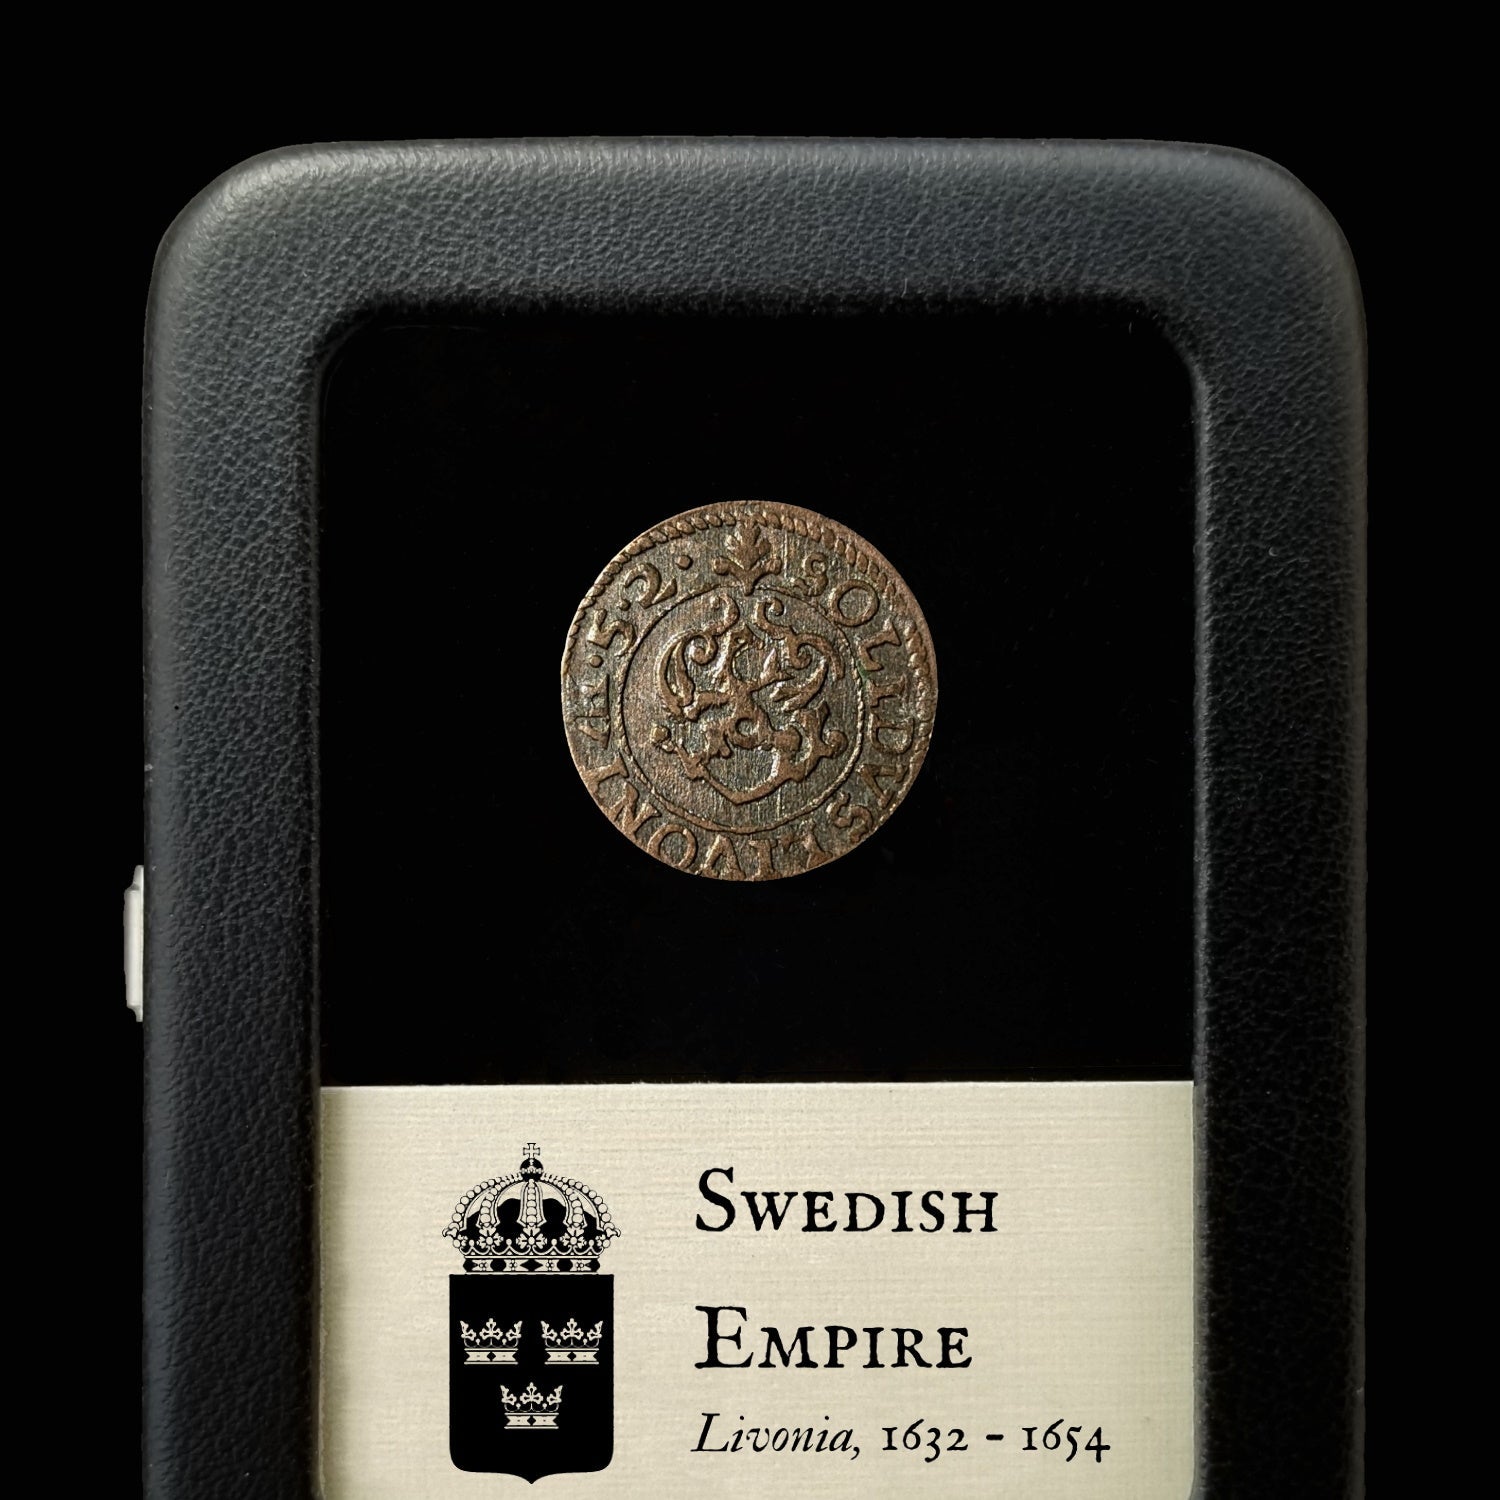 Swedish Empire, Livonia - 1632 - Latvia